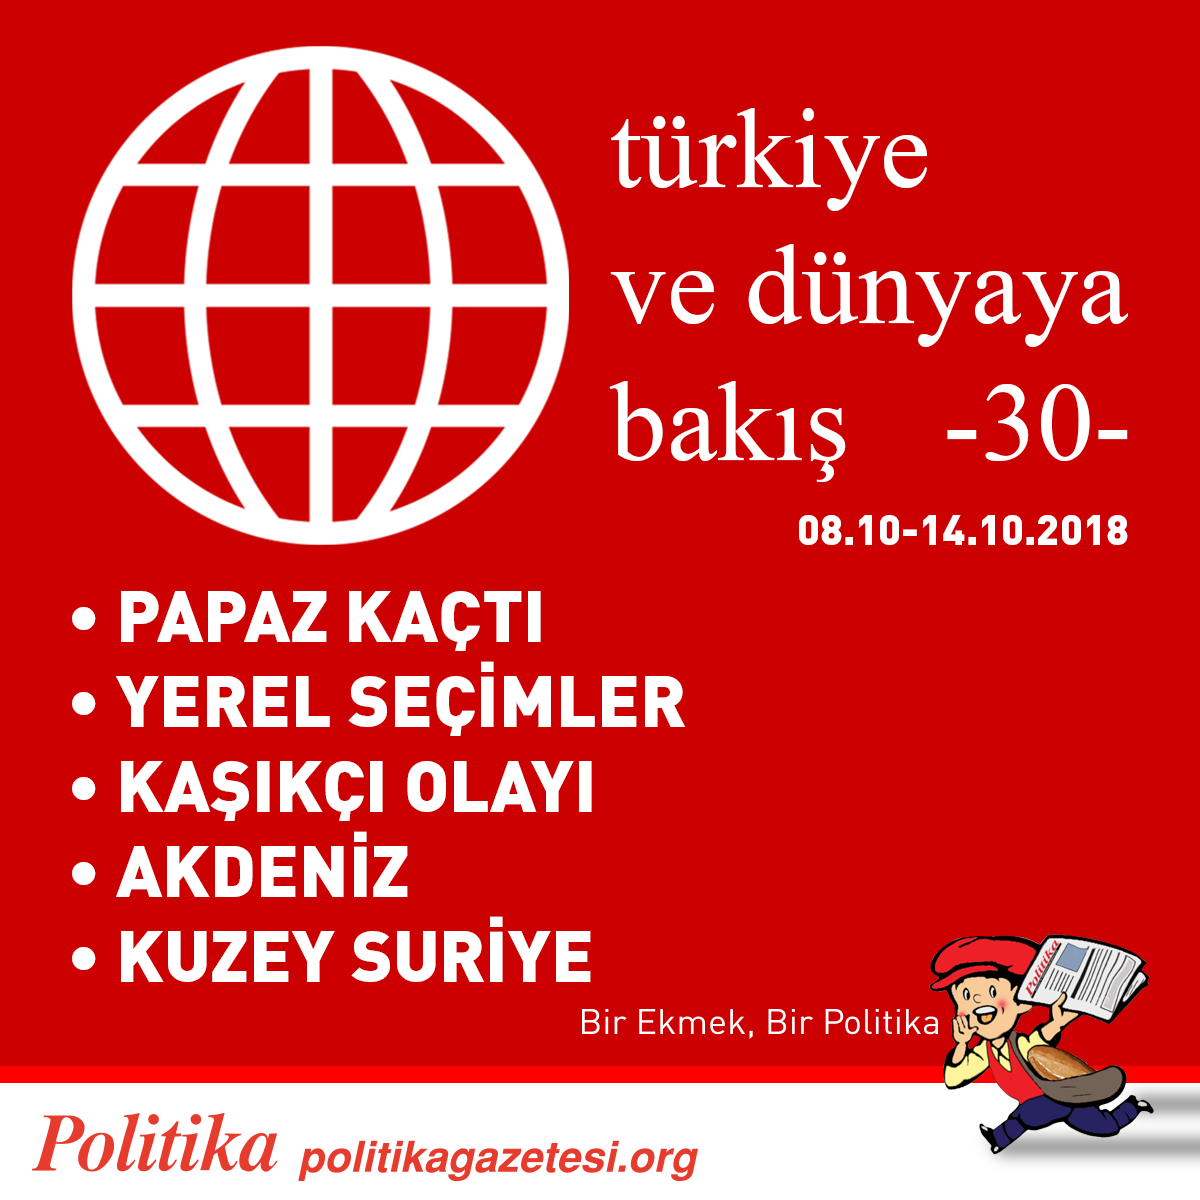 POLİTİKA’DAN GEÇMİŞ HAFTAYA BAKIŞ  08.10-14.10.2018